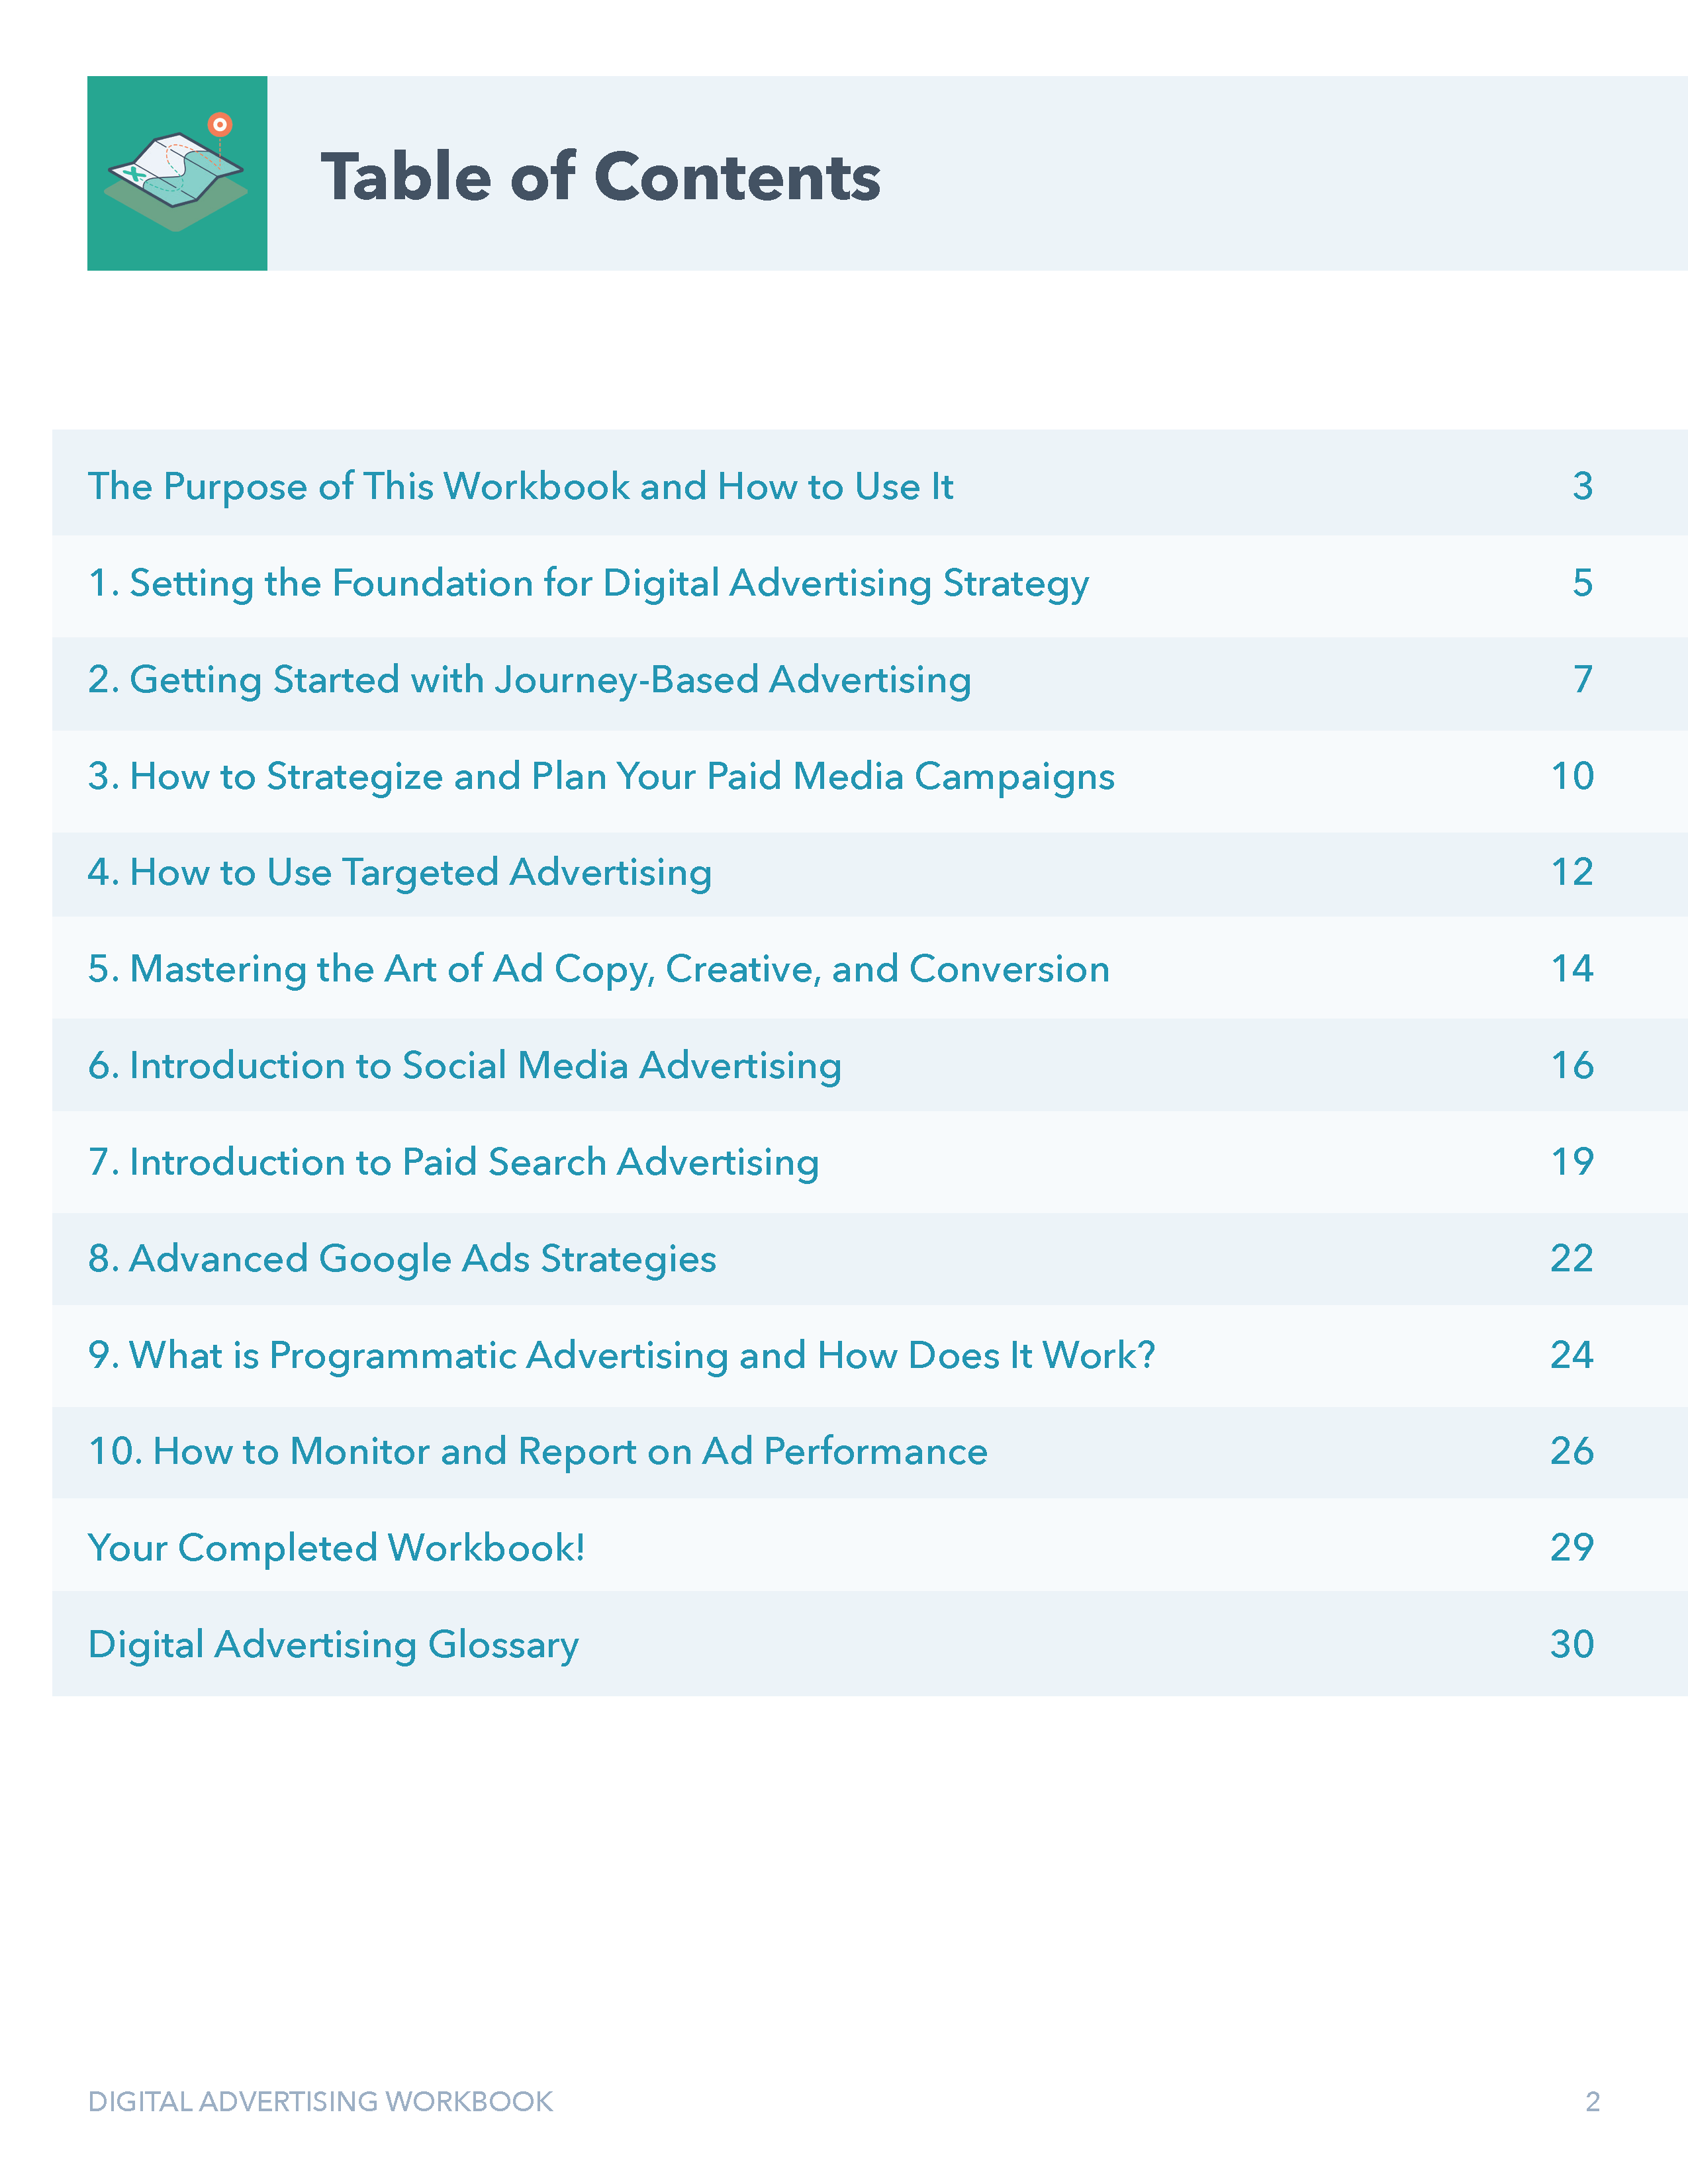 Digital Advertising Workbook (2)_Page_02